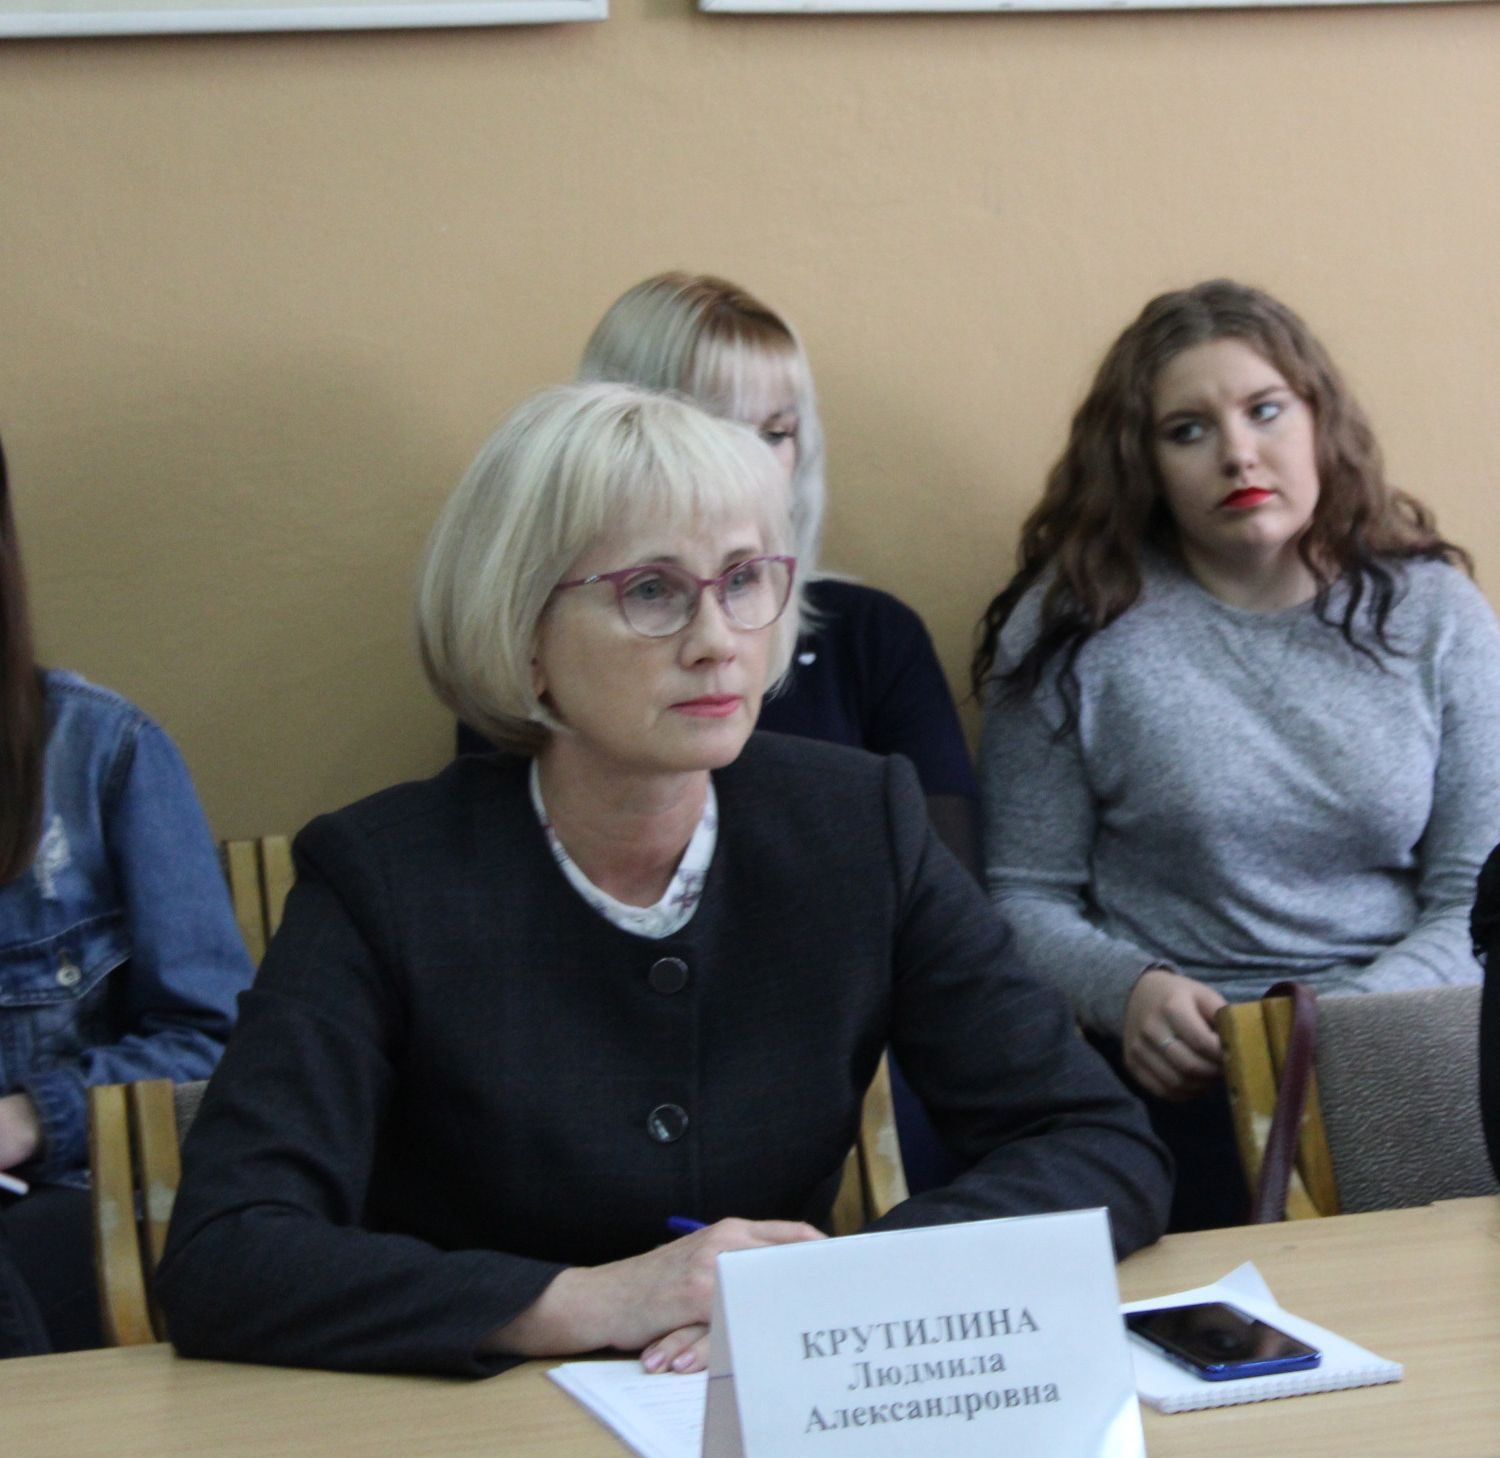 QR-коды, Интернет-агрегаторы и другие новации в законодательстве: в Ульяновске обсудили права потребителей